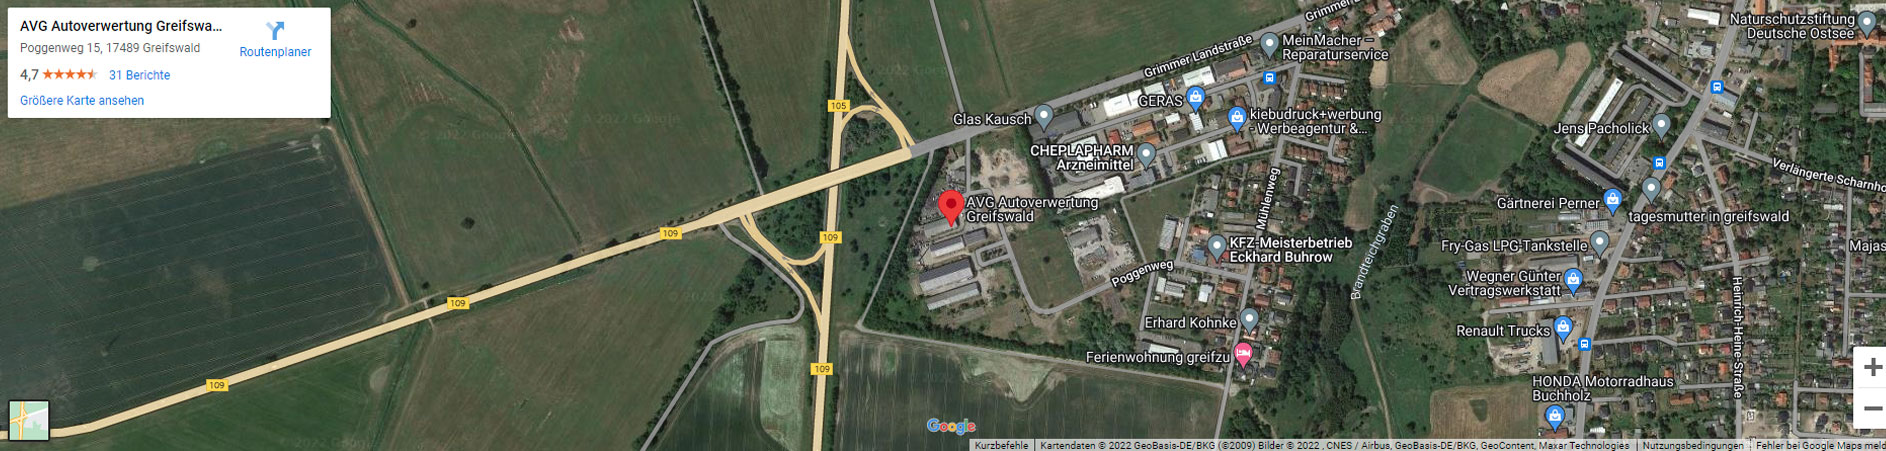 autoverwertung-greifswald-google-maps